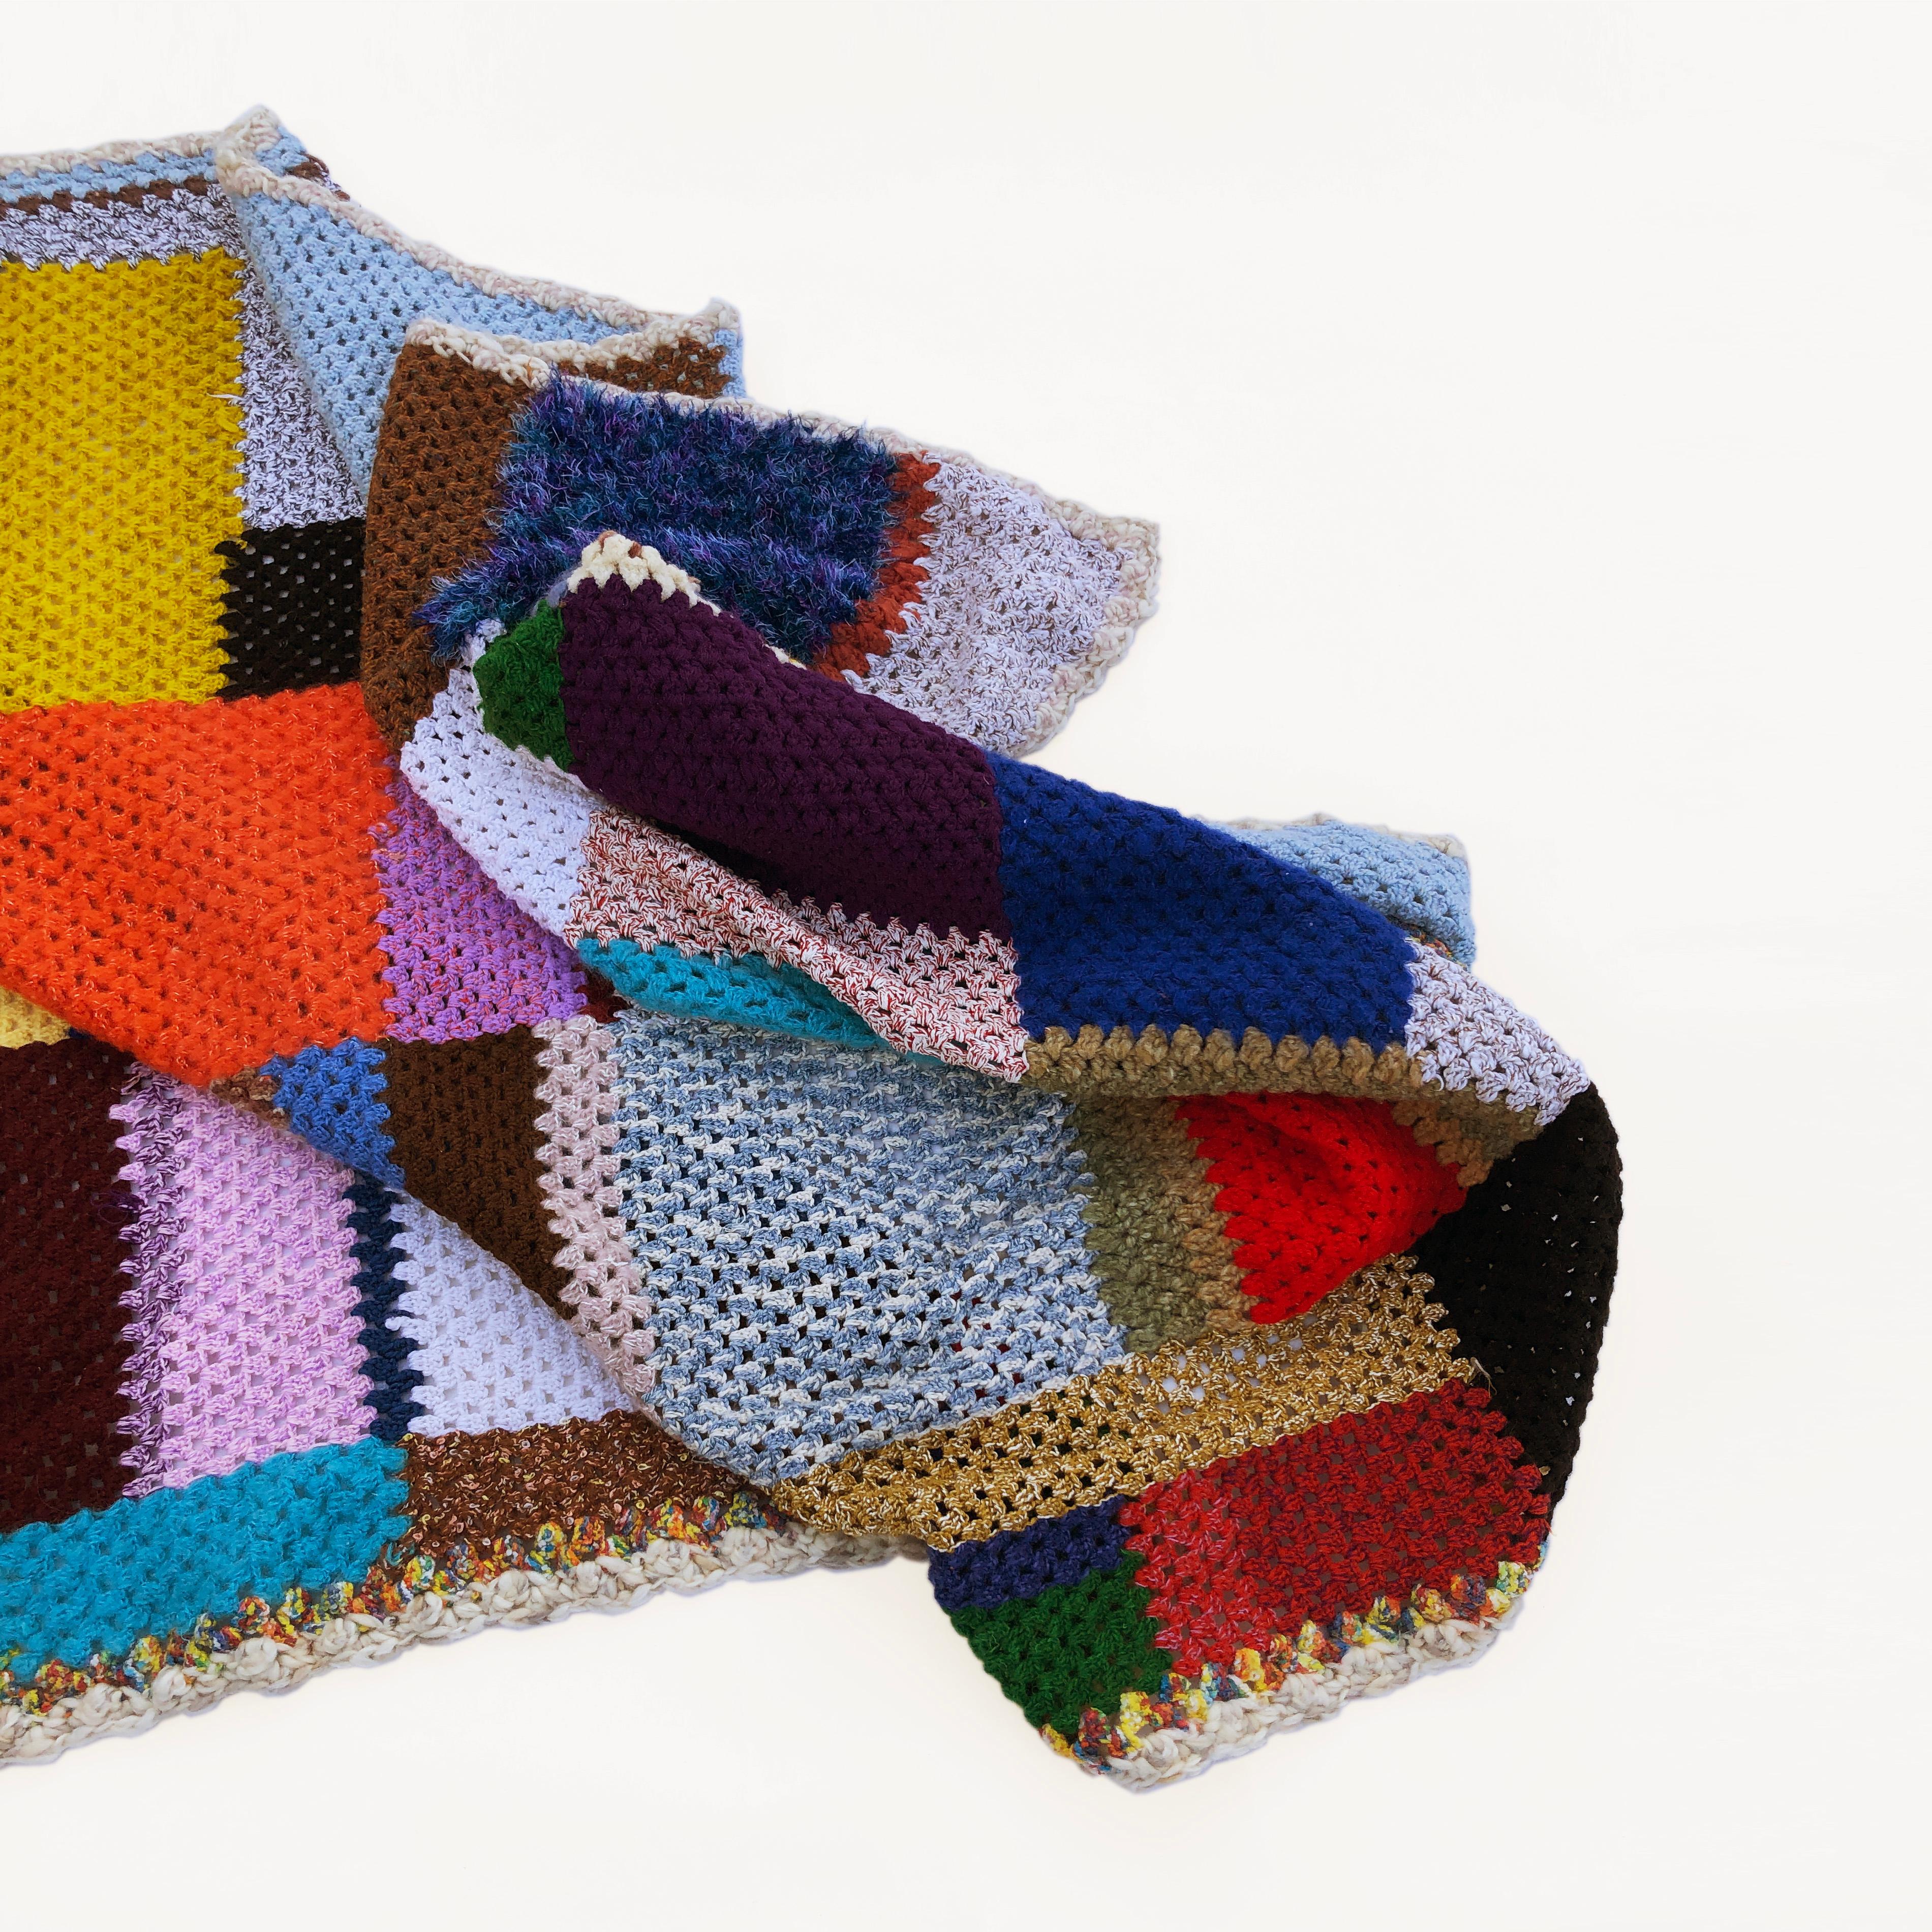 homemade crochet blankets for sale